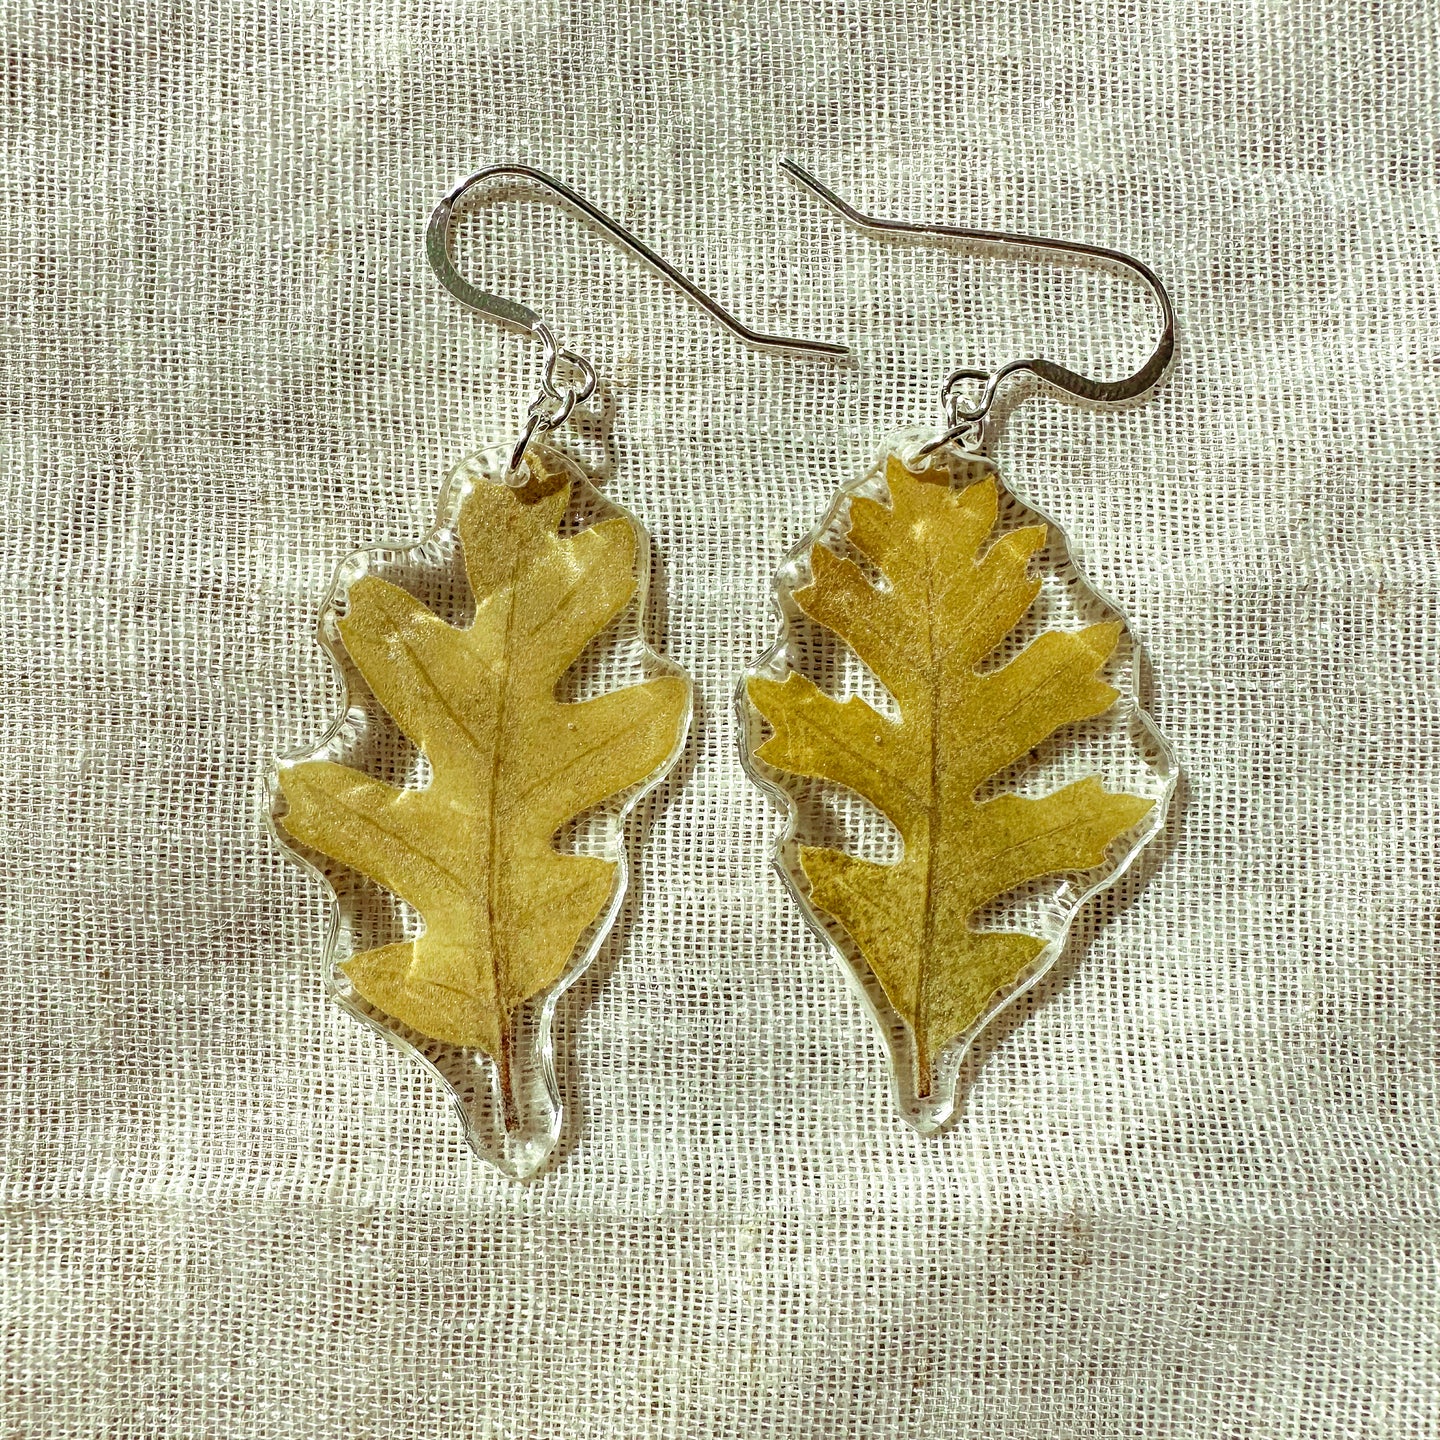 Small oak leaf earrings